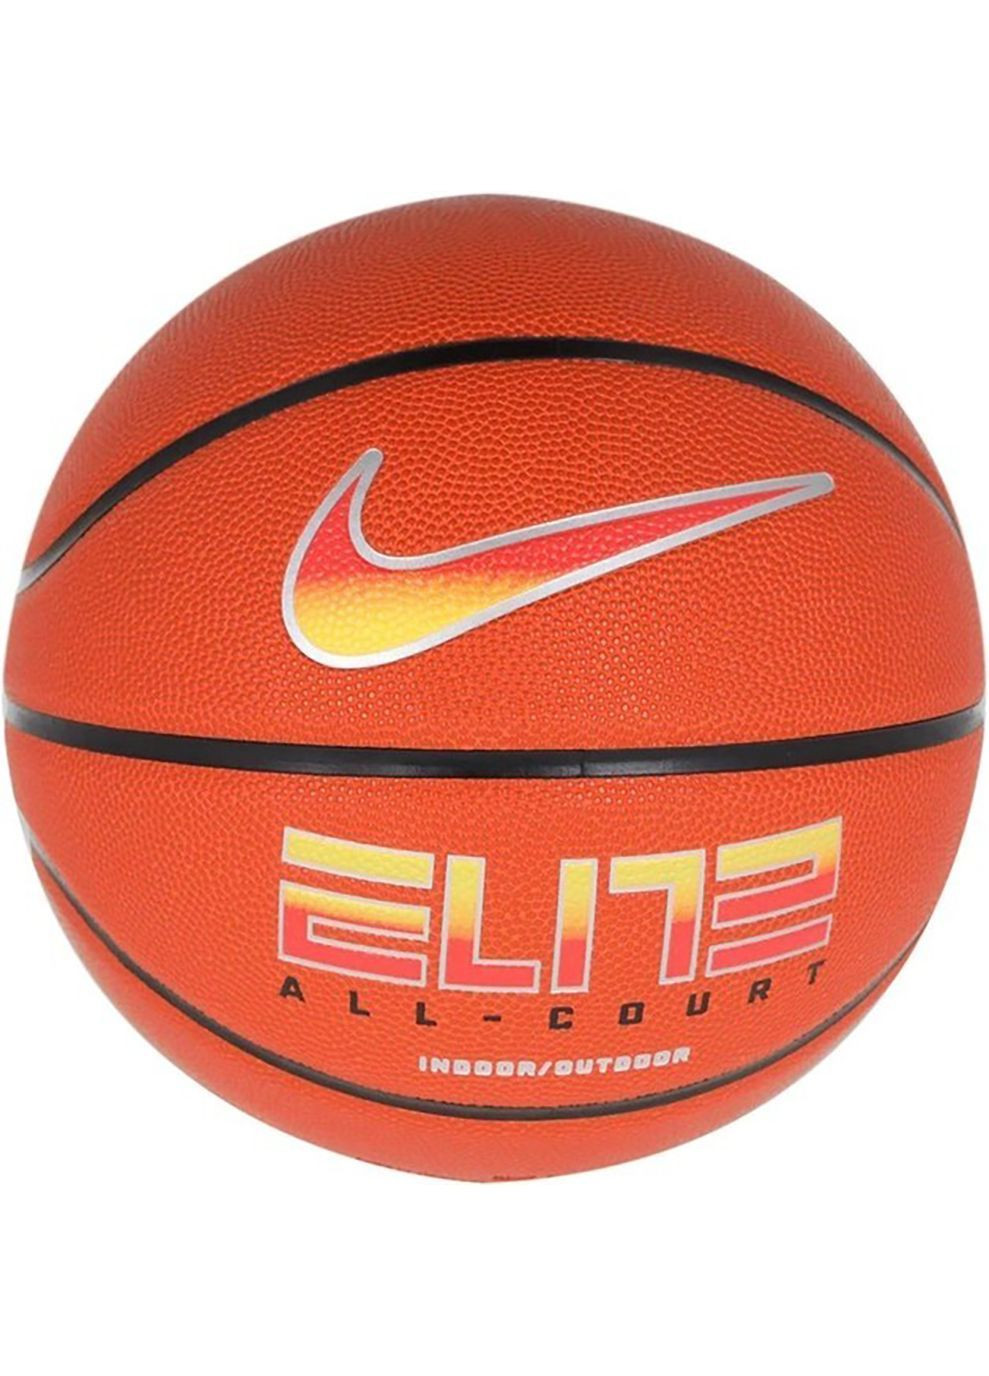 М'яч баскетбольний ELITE ALL COURT 8P 2.0 DEFLATED помаранчевий Уні 7 Nike (282617190)